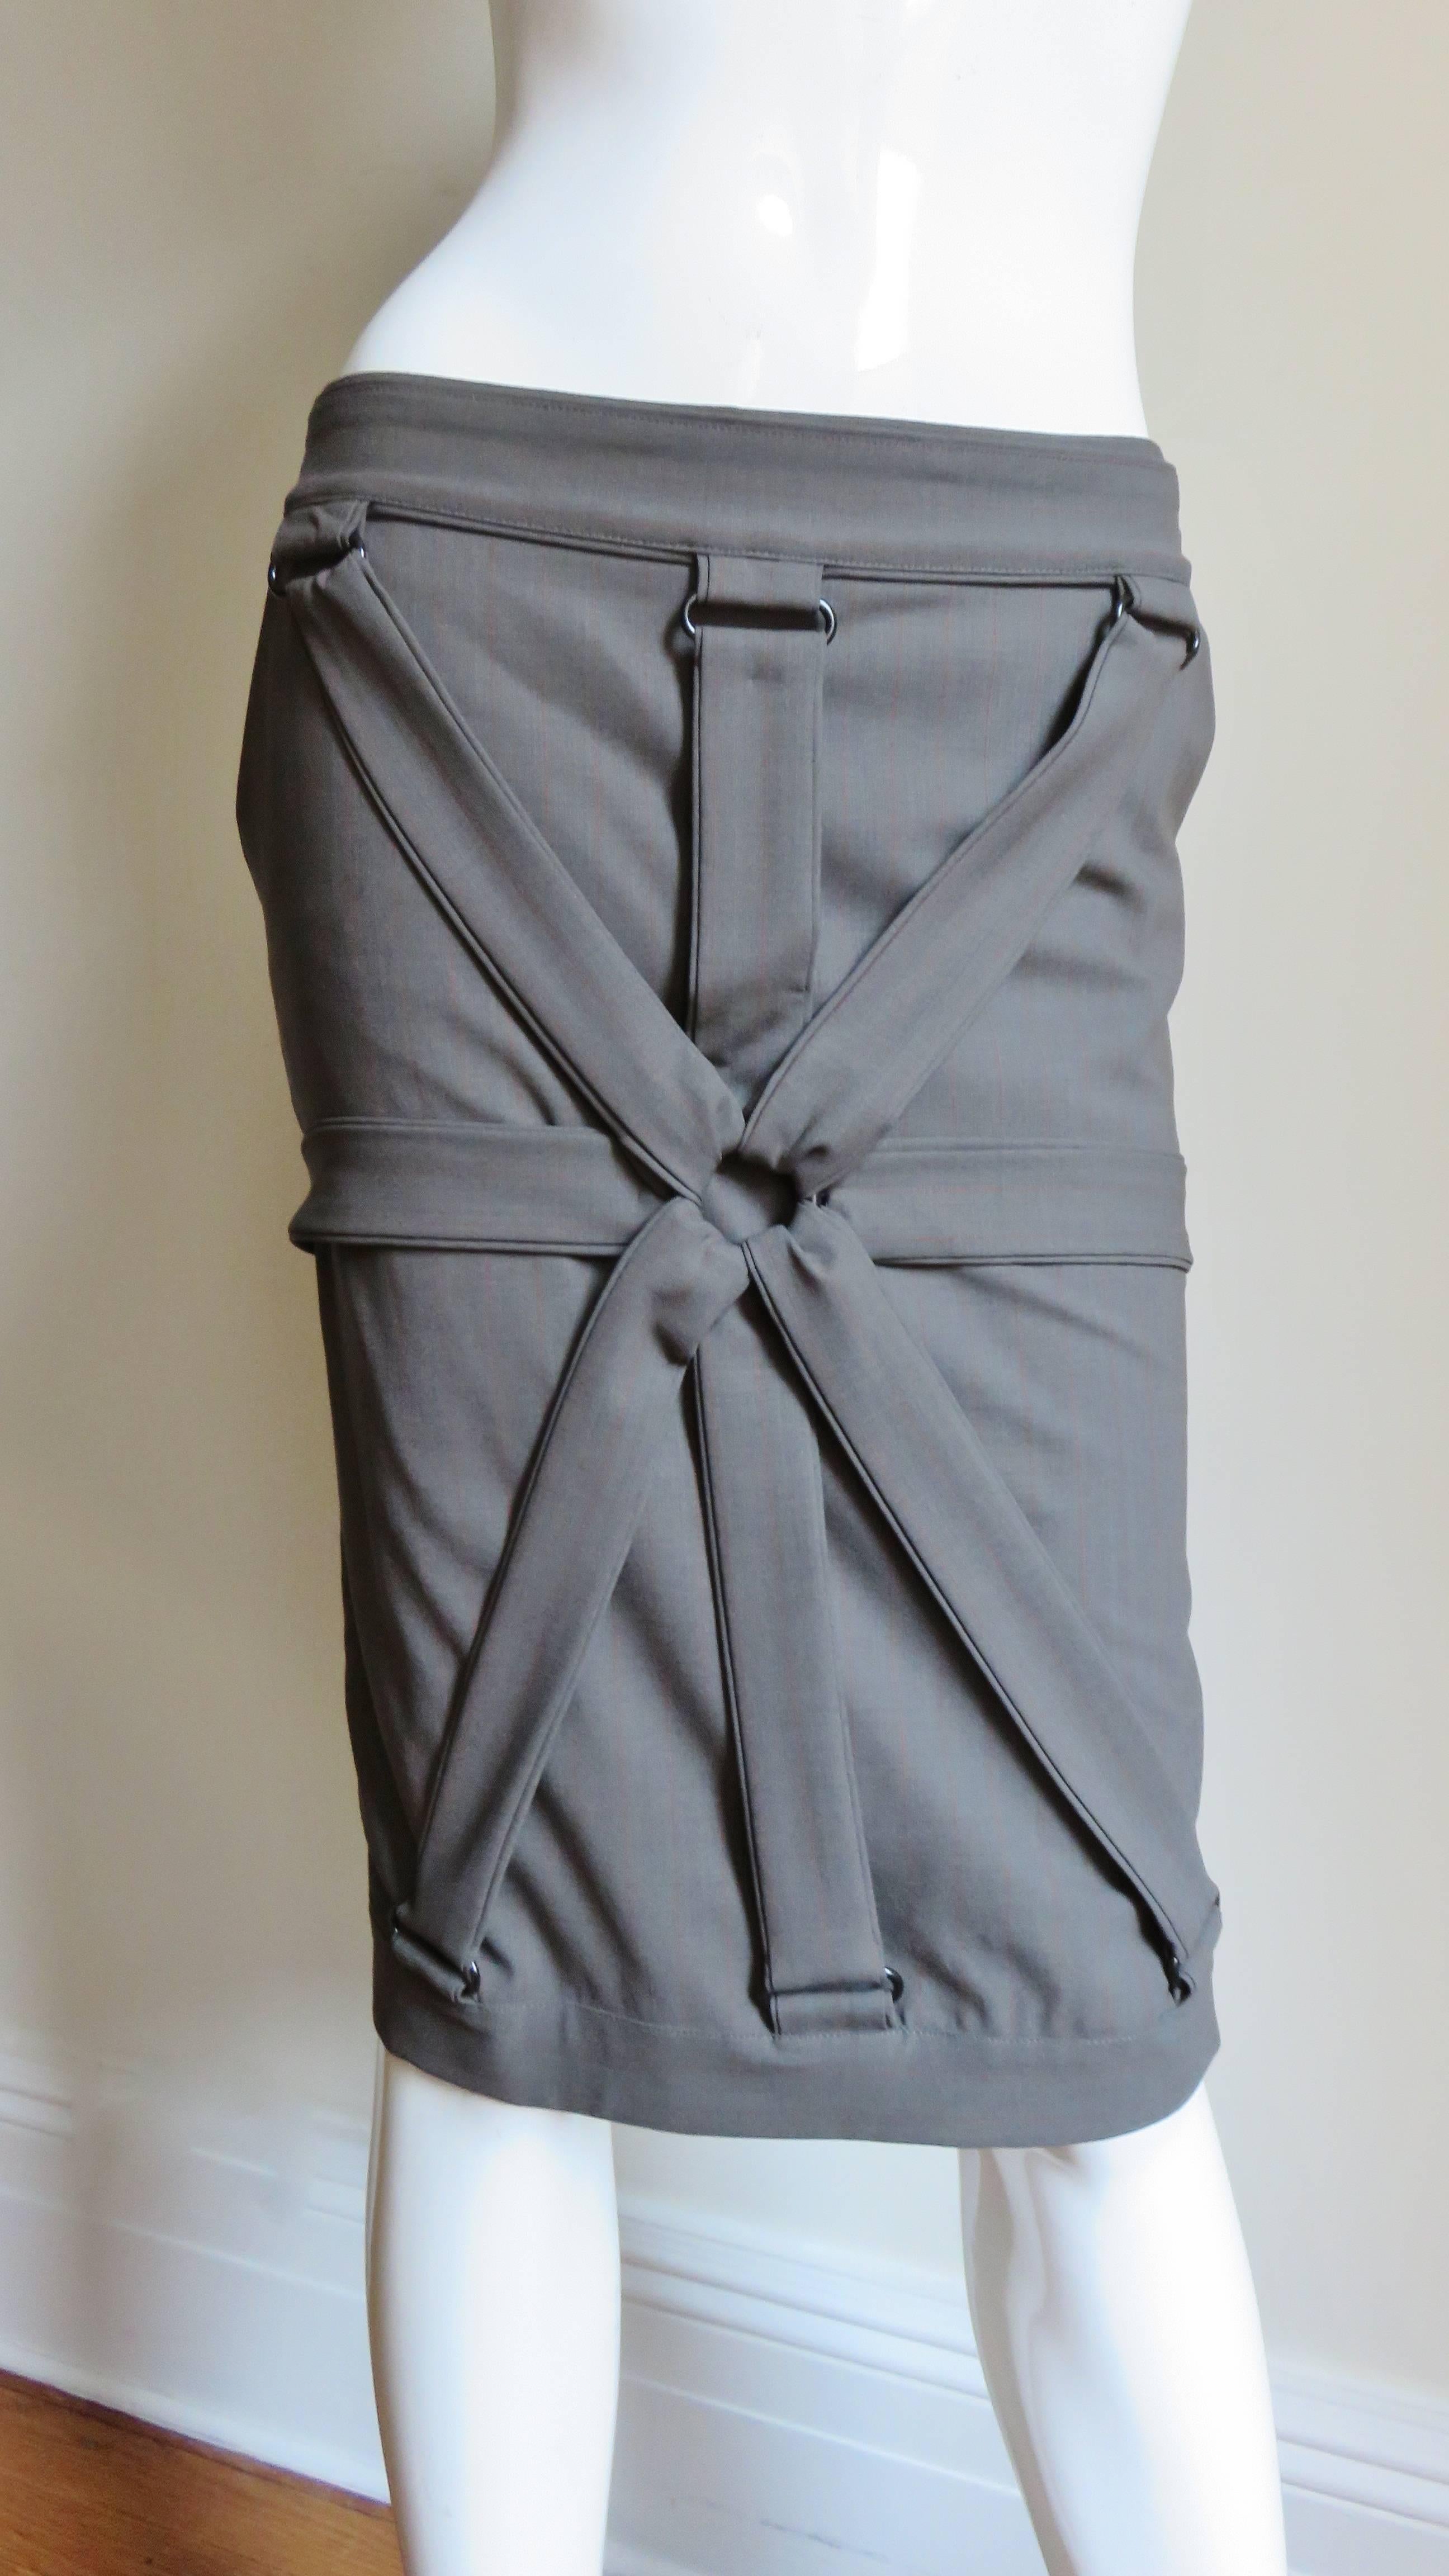 Une superbe jupe en jersey de laine de Jean Paul Gaultier en gris kaki avec de fines rayures rouille subtiles. Il s'agit d'un style crayon mi-montant avec une bande de taille, et des bretelles rayonnantes devant et derrière se rejoignant dans un